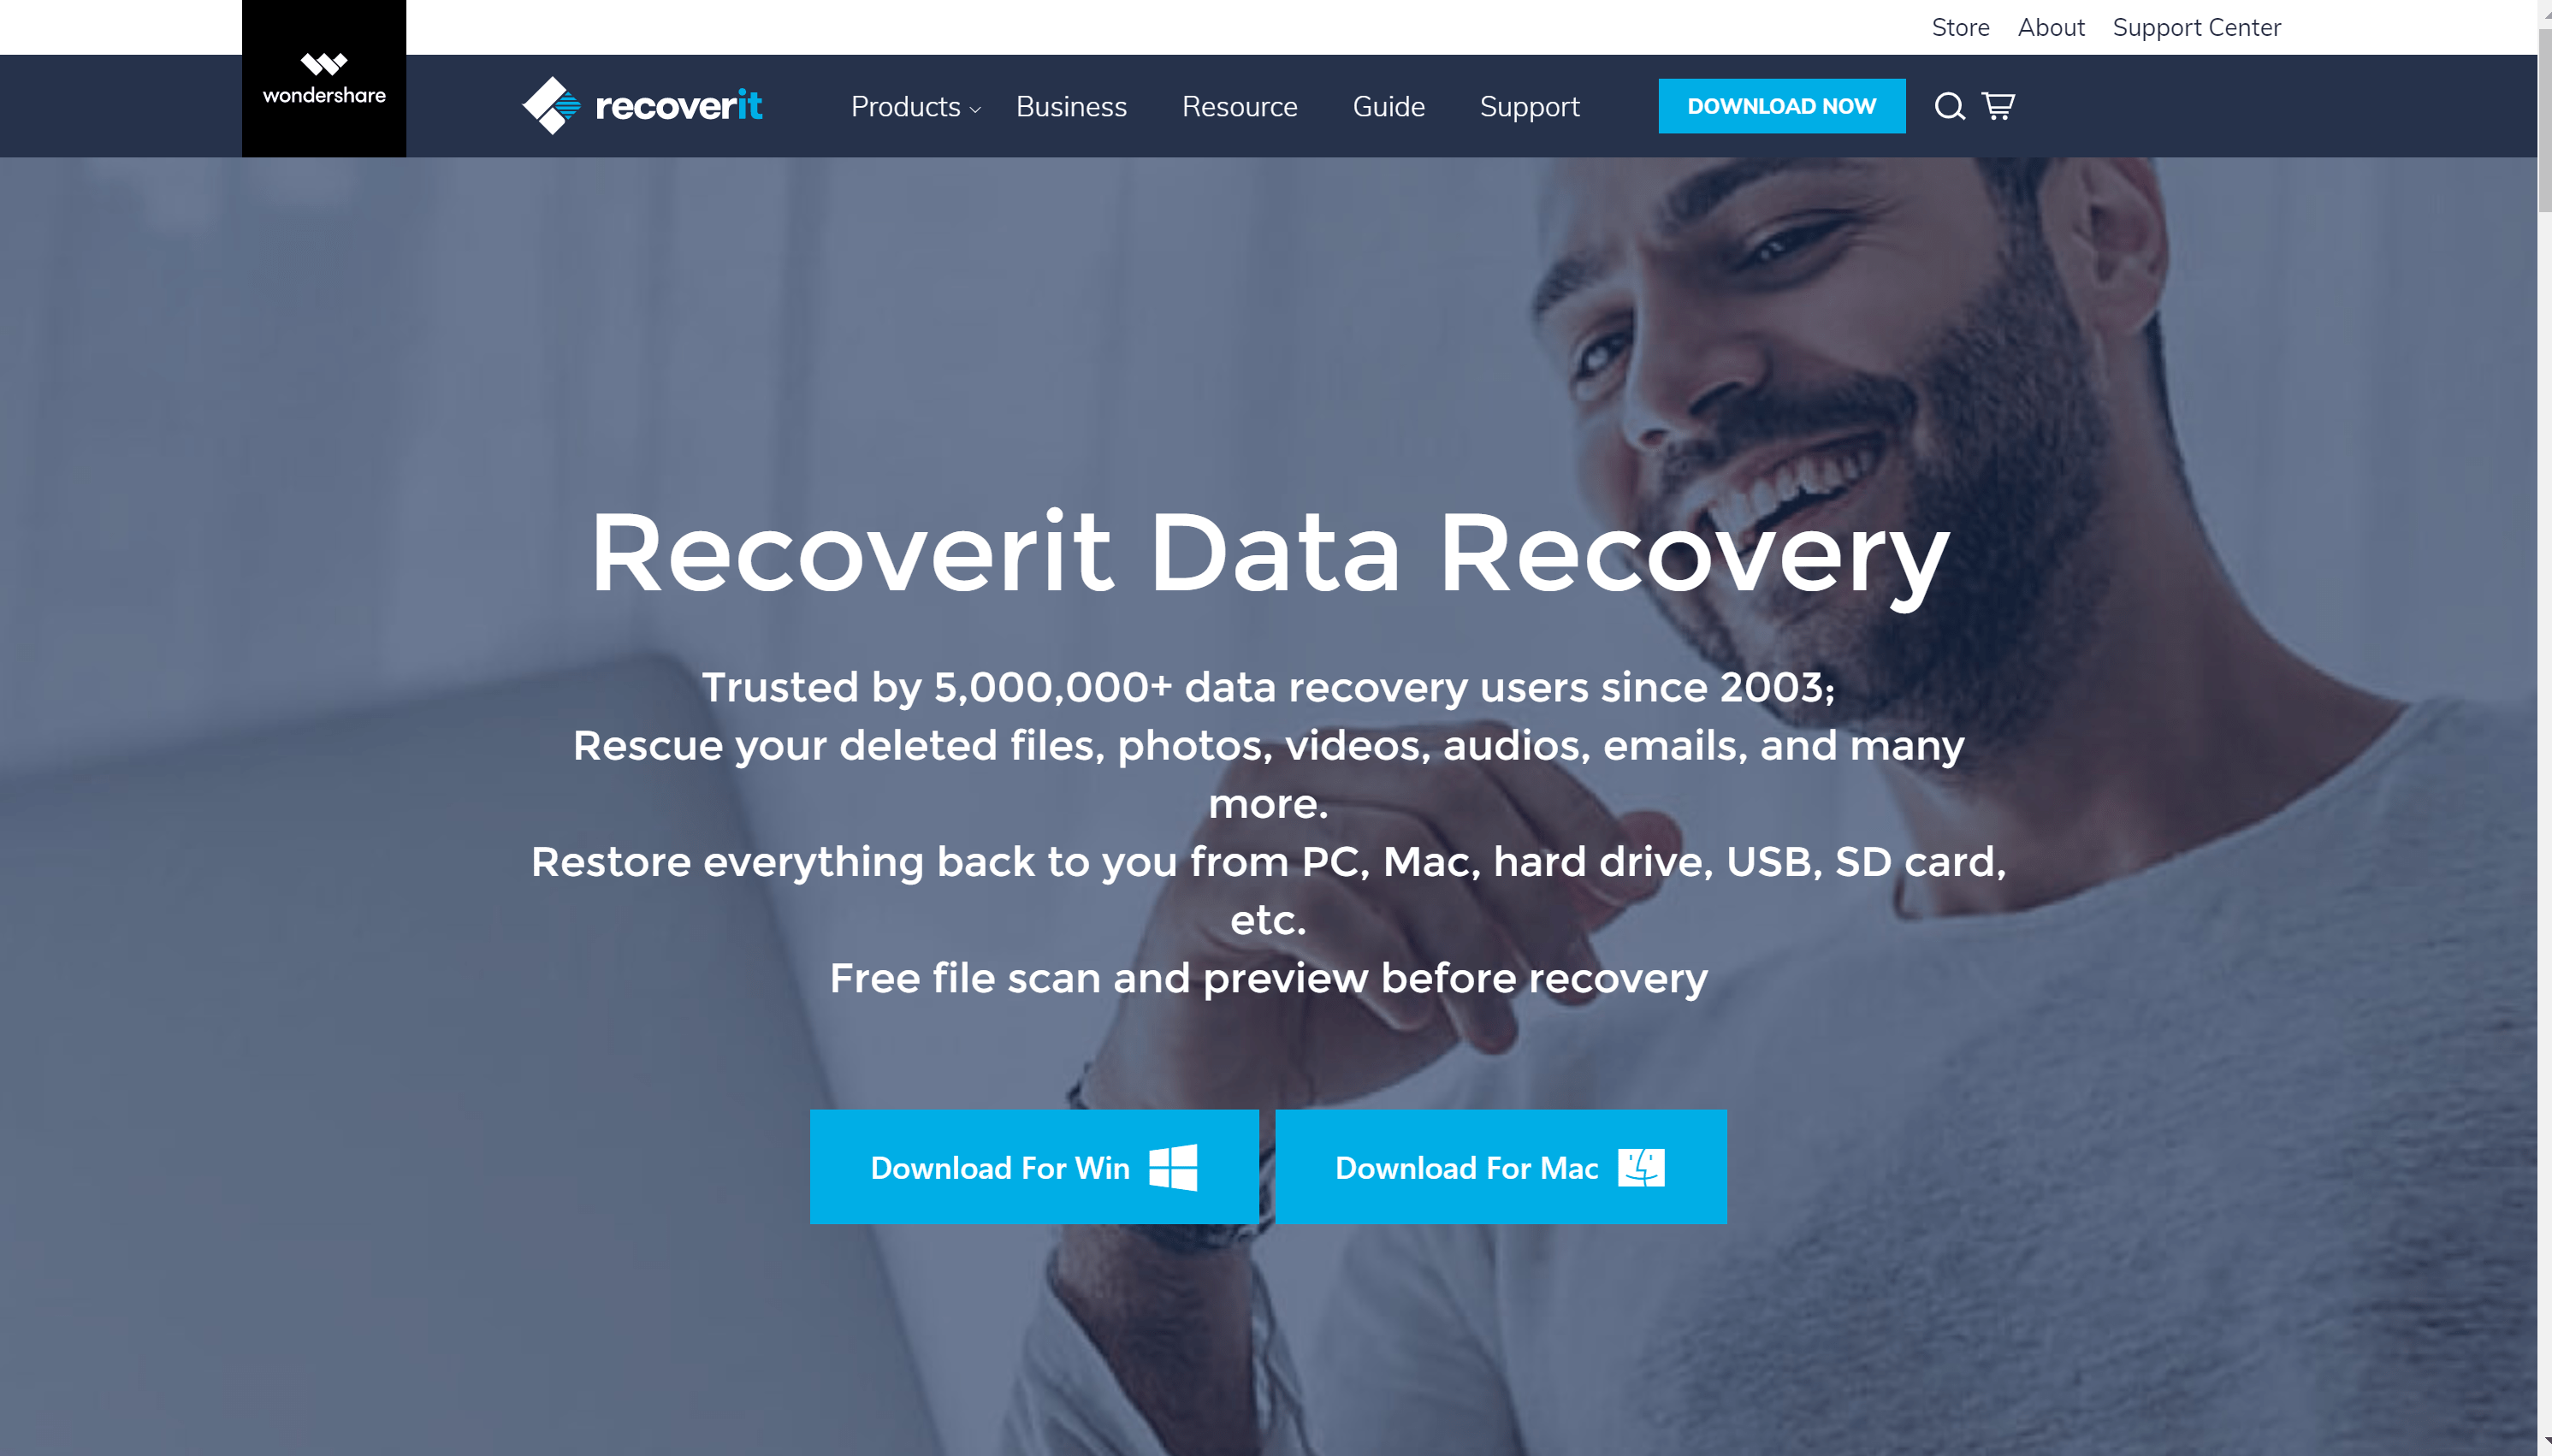 wondershare data recovery for mac